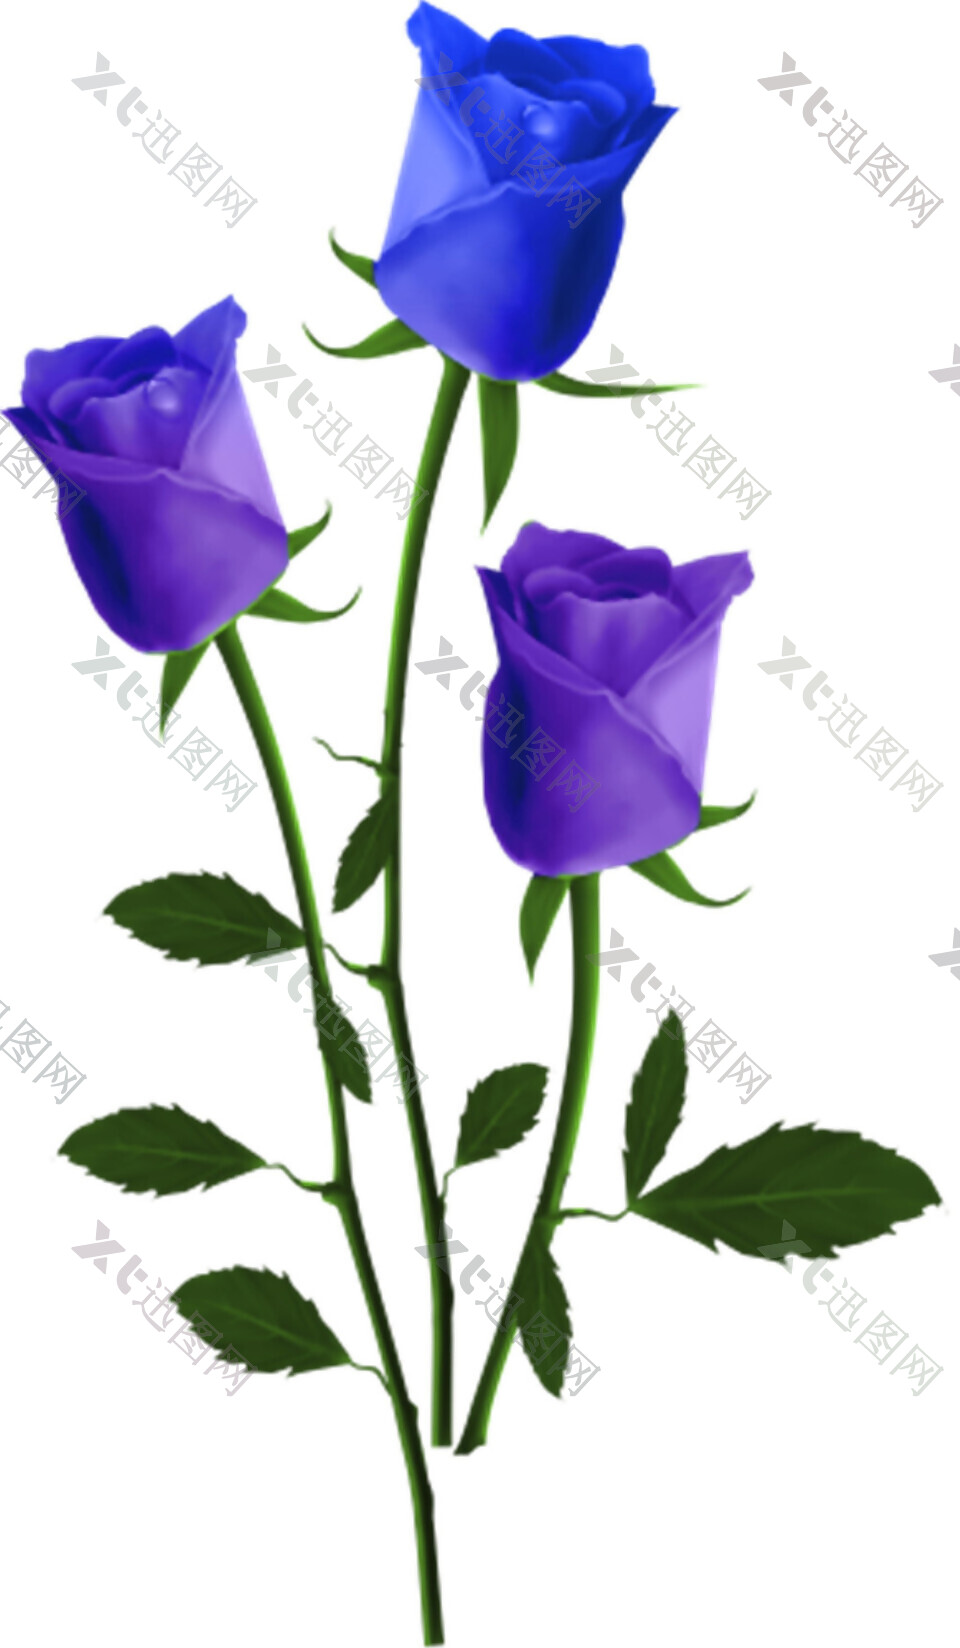 三支宝蓝色玫瑰花素材图片